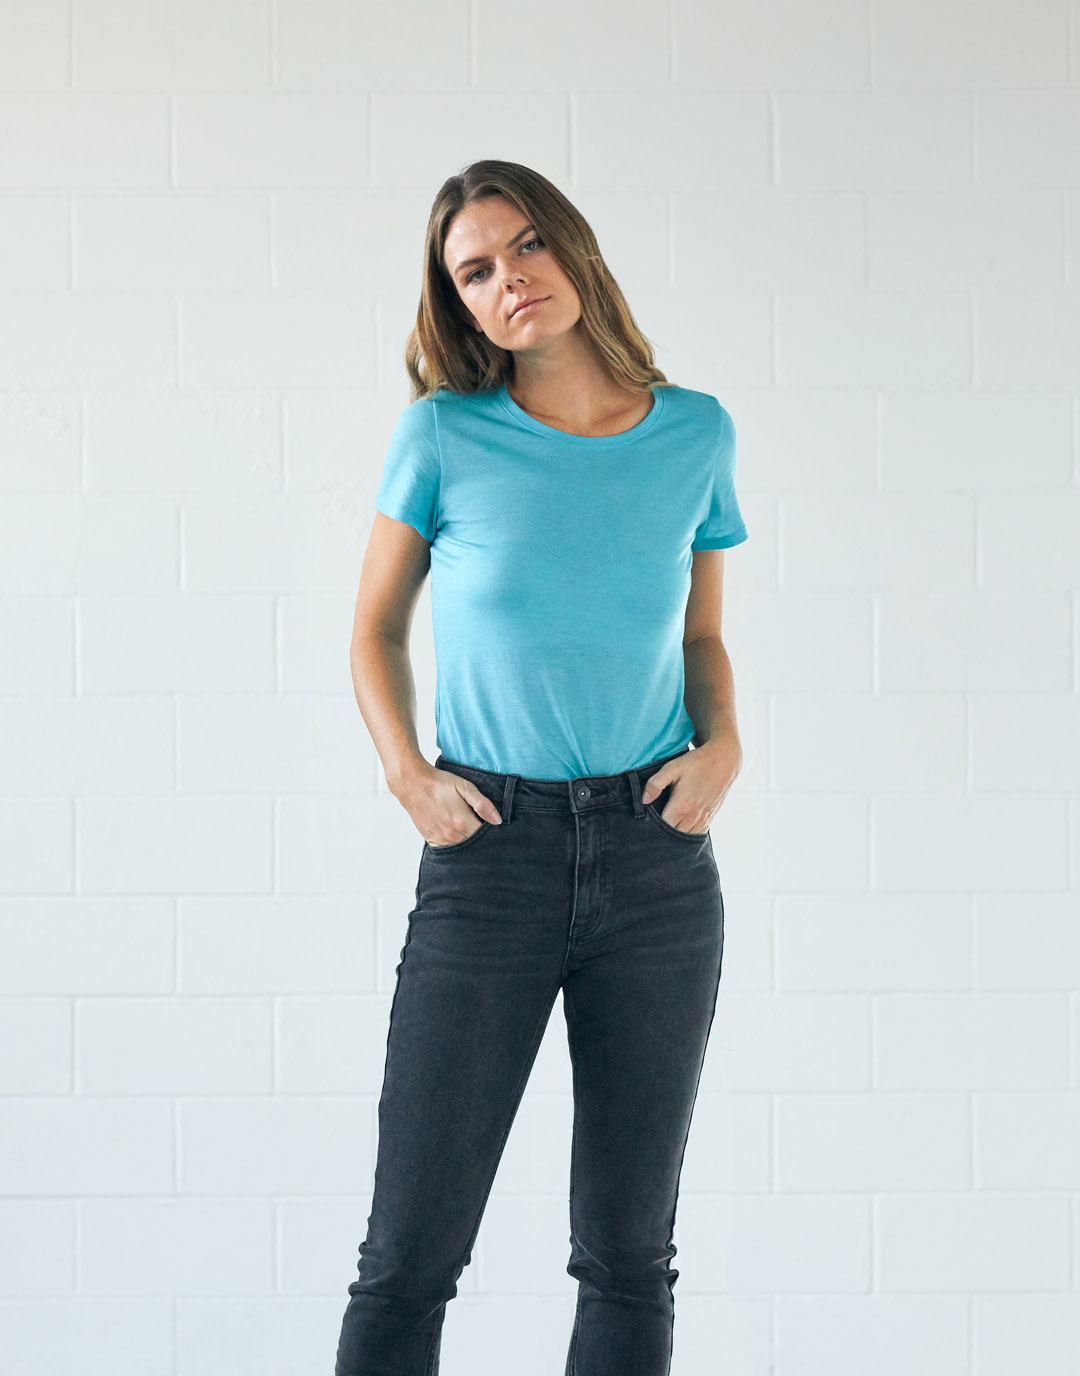 Une femme qui porte un t-shirt cyan et un jean gris foncé